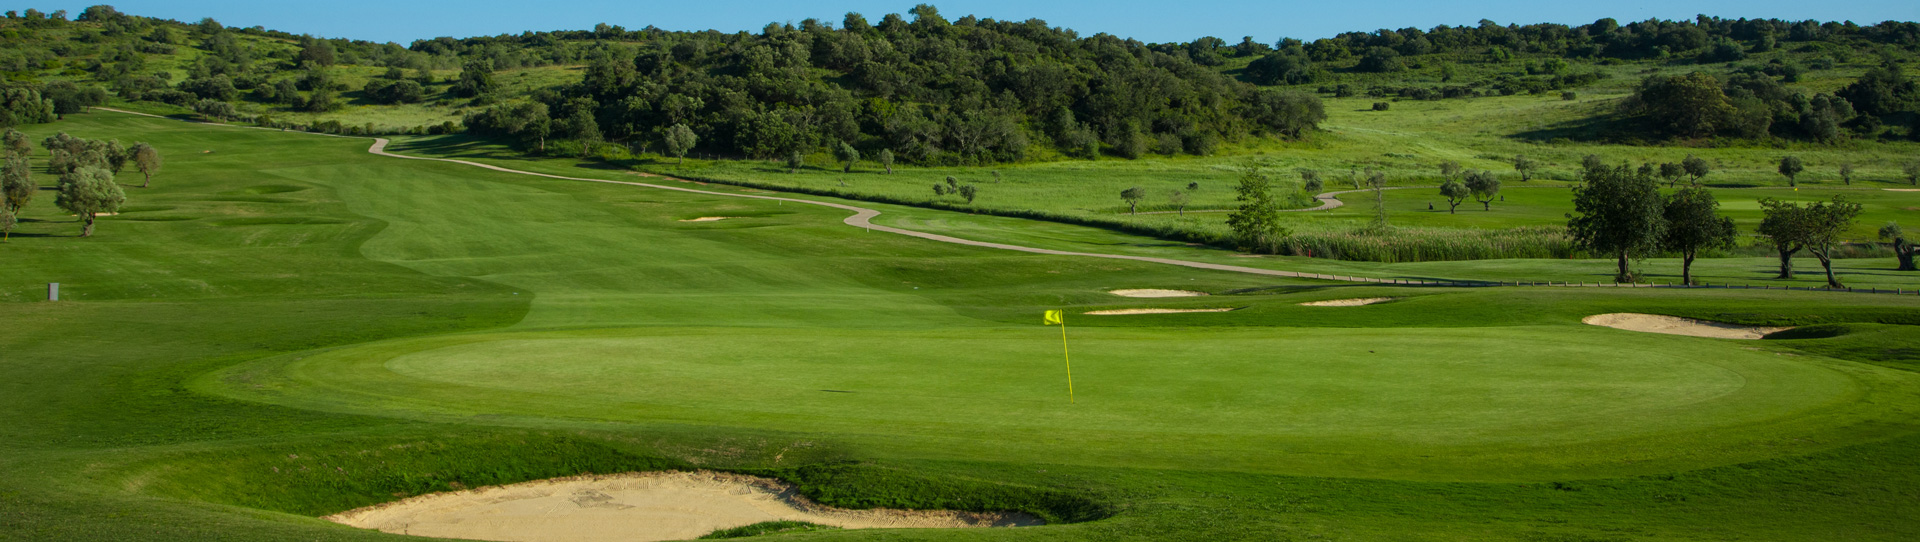 Portugal golf holidays - Salgados & Morgado & Alamos - Photo 3